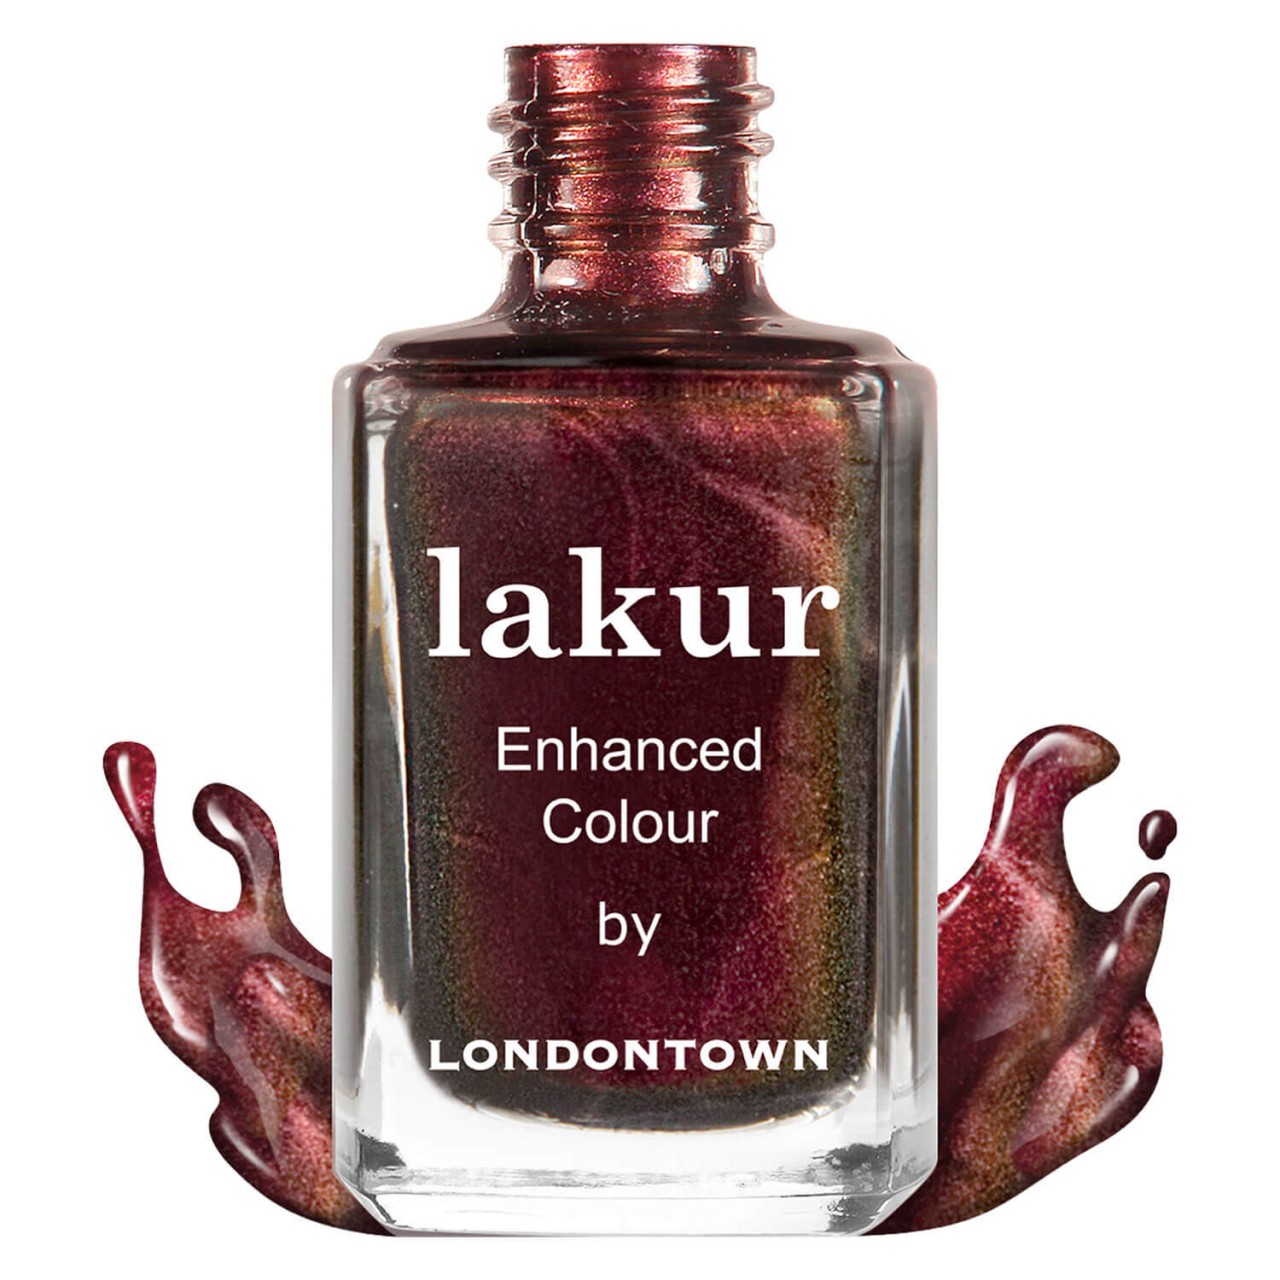 lakur - Cockney Glam von Londontown